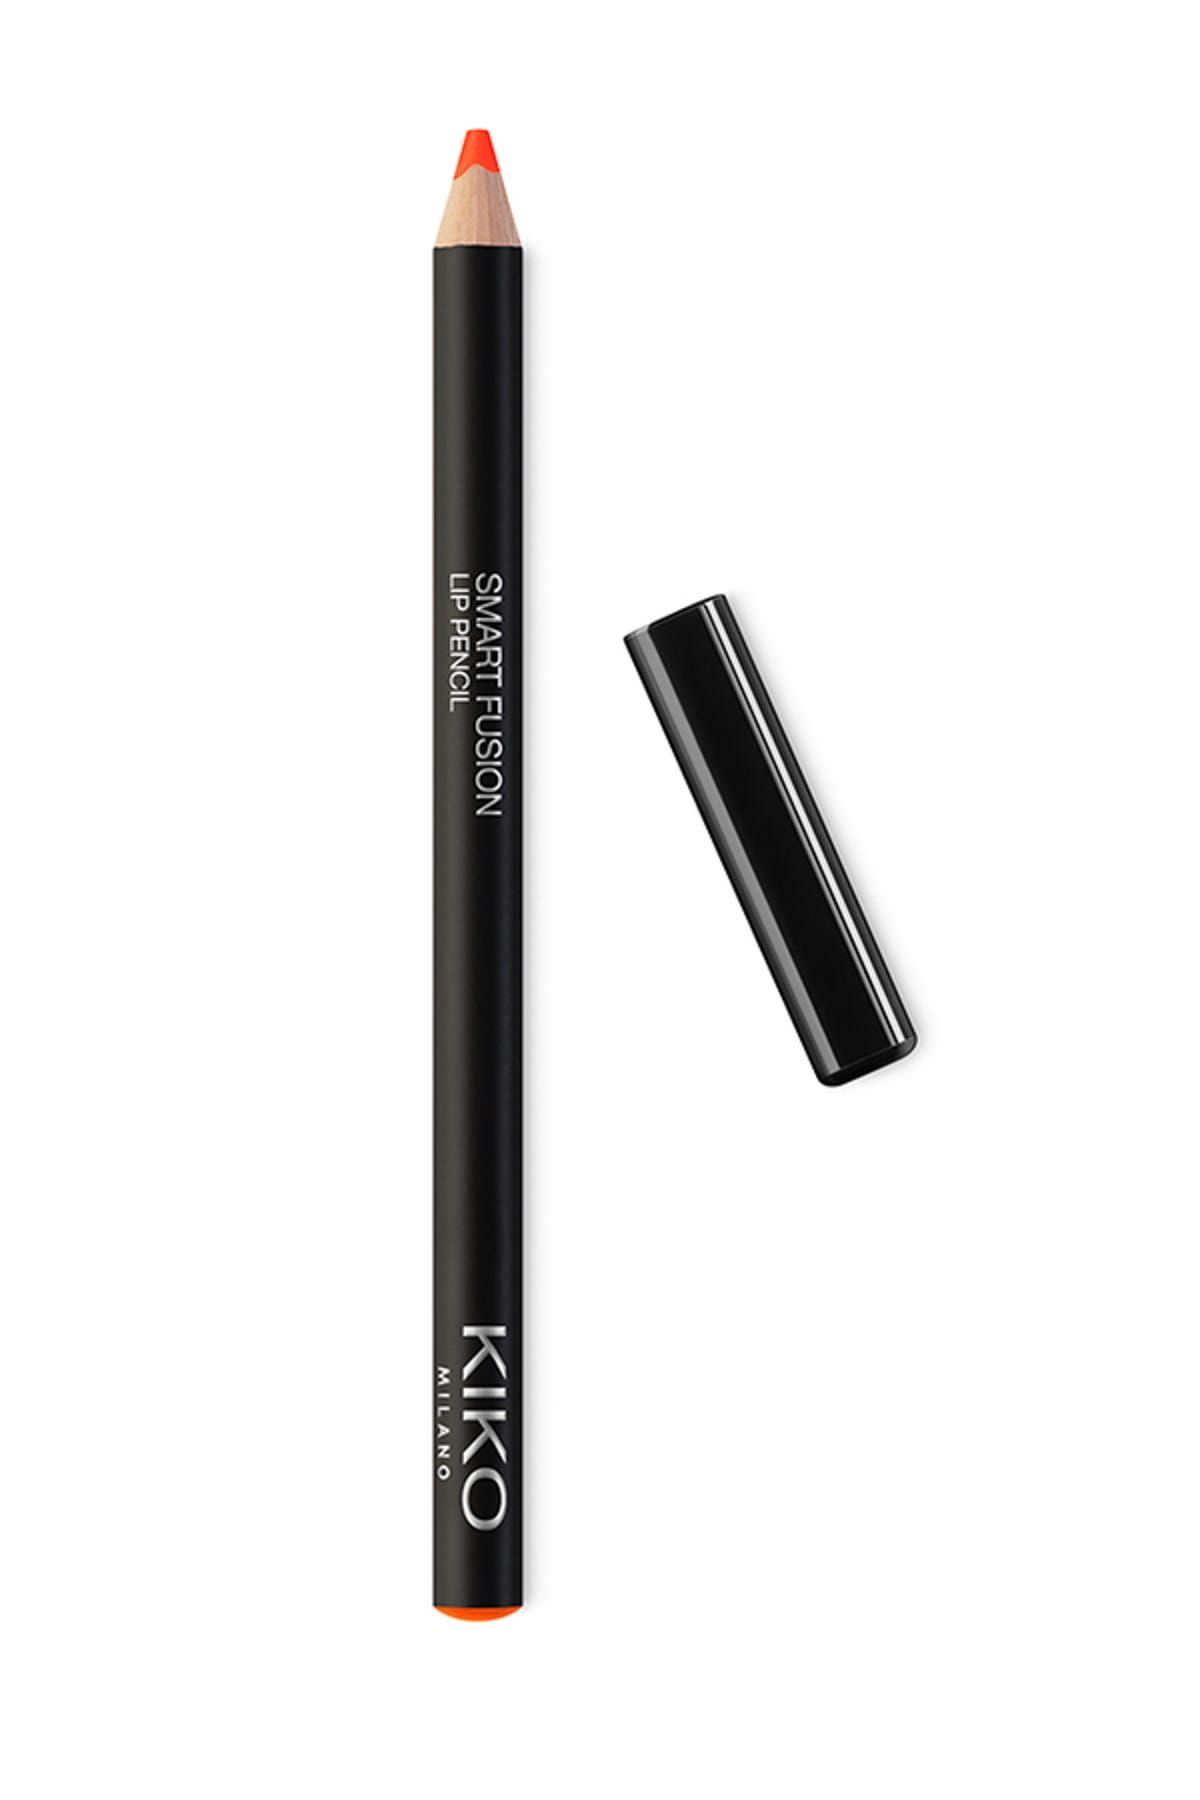 KIKO مداد لب Smart Fusion بافت نرم و روان شماره 513 رنگ قرمز پاپایا